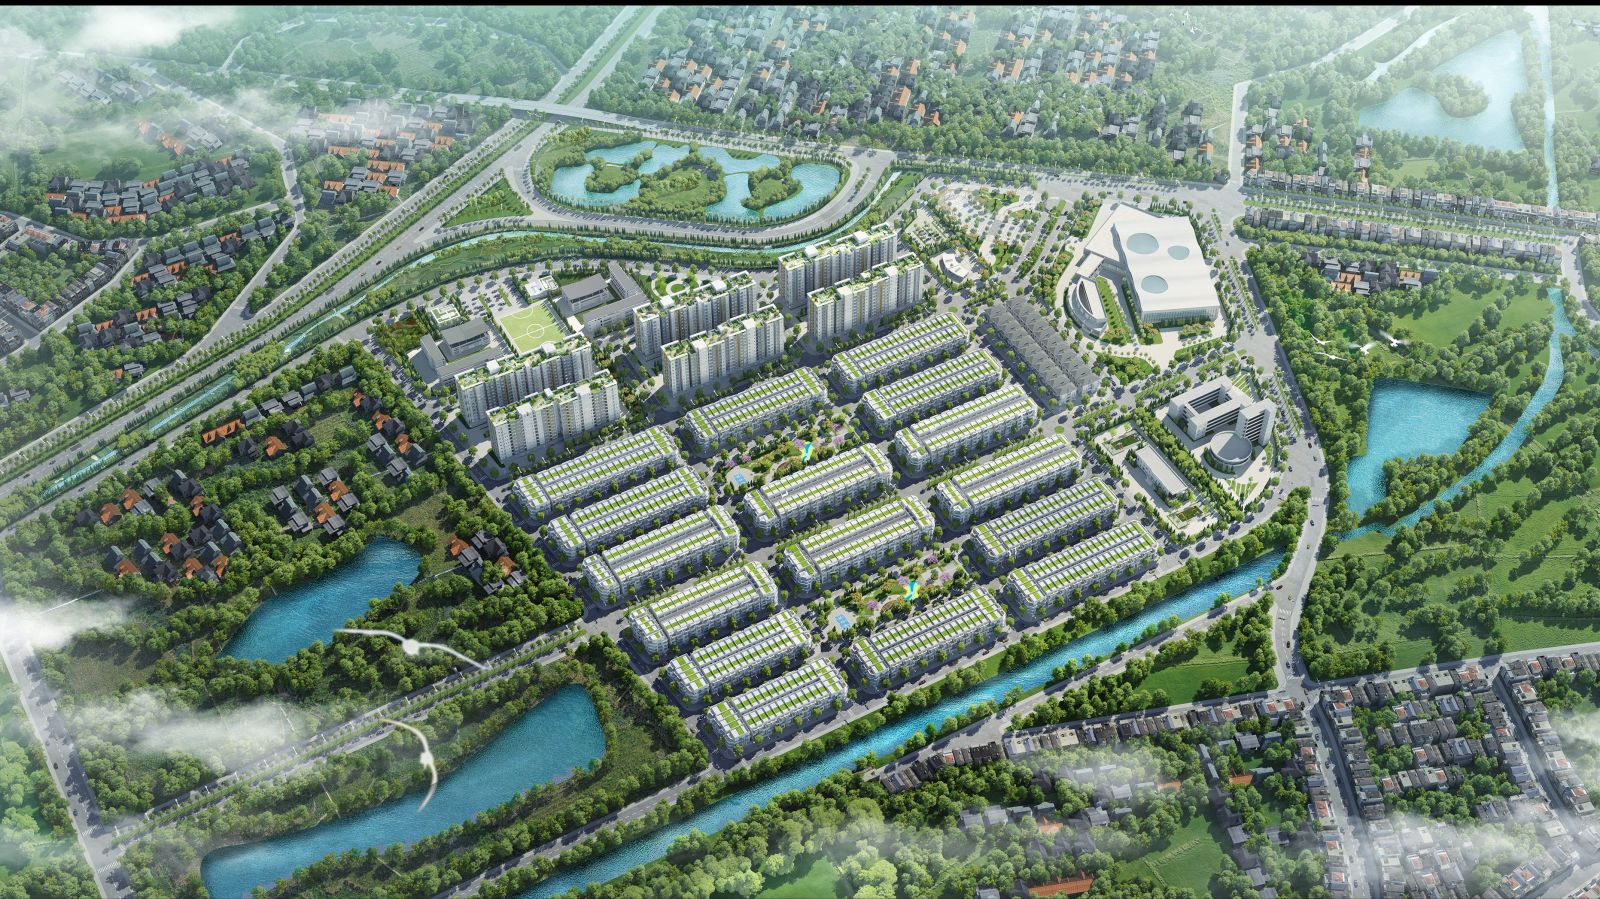 Him Lam Green Park là khu đô thị hoàn chỉnh bậc nhất tại Bắc Ninh